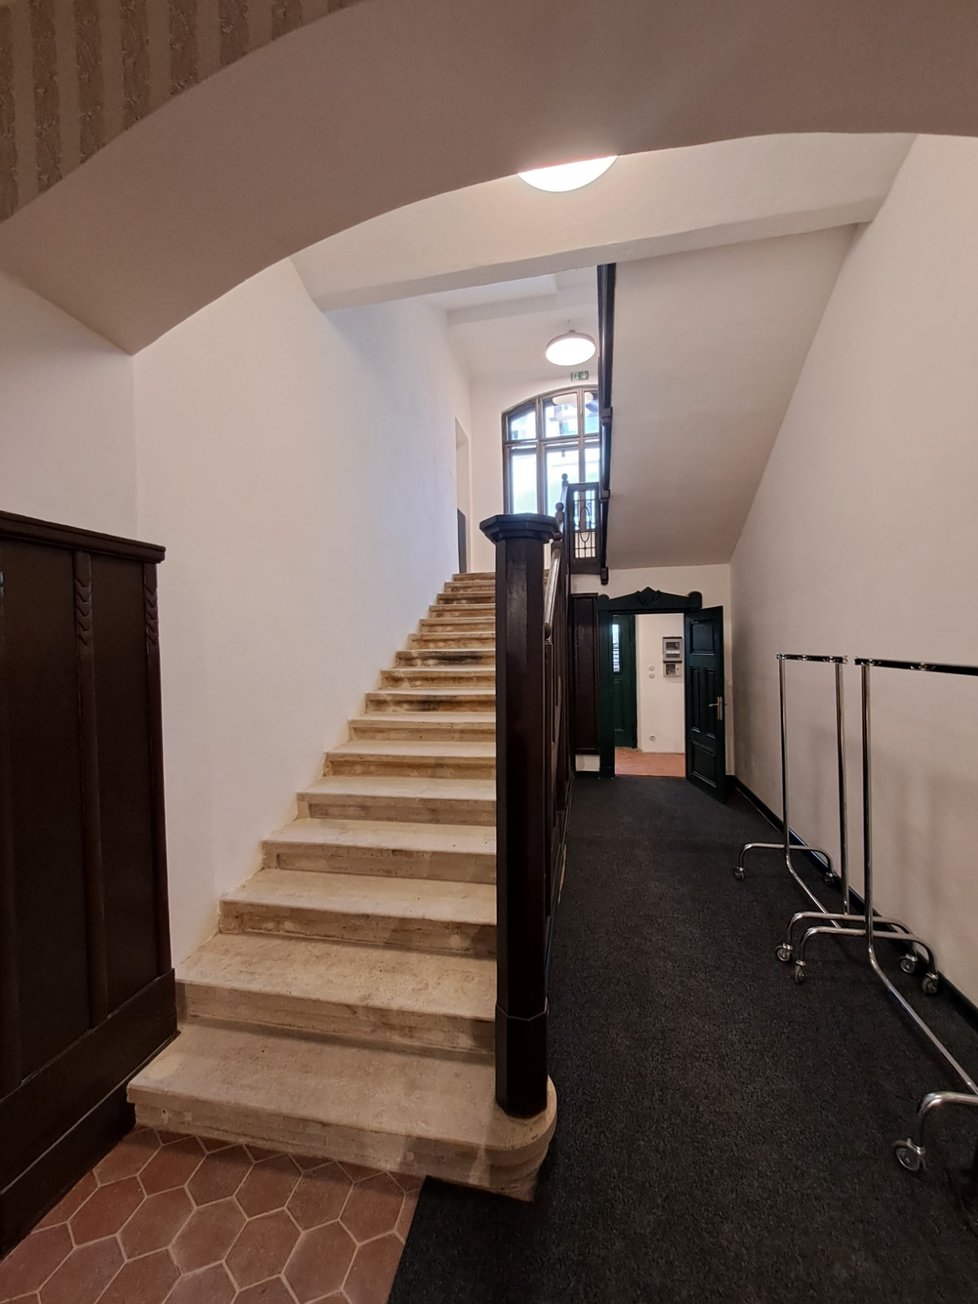 Arnoldova vila v brněnských Černých Polích prošla nákladnou historickou rekonstrukcí. Vzniklo v ní Centrum dialogu s expozicemi o staviteli Josefu Arnoldovi a o dějinách Židů v Brně.